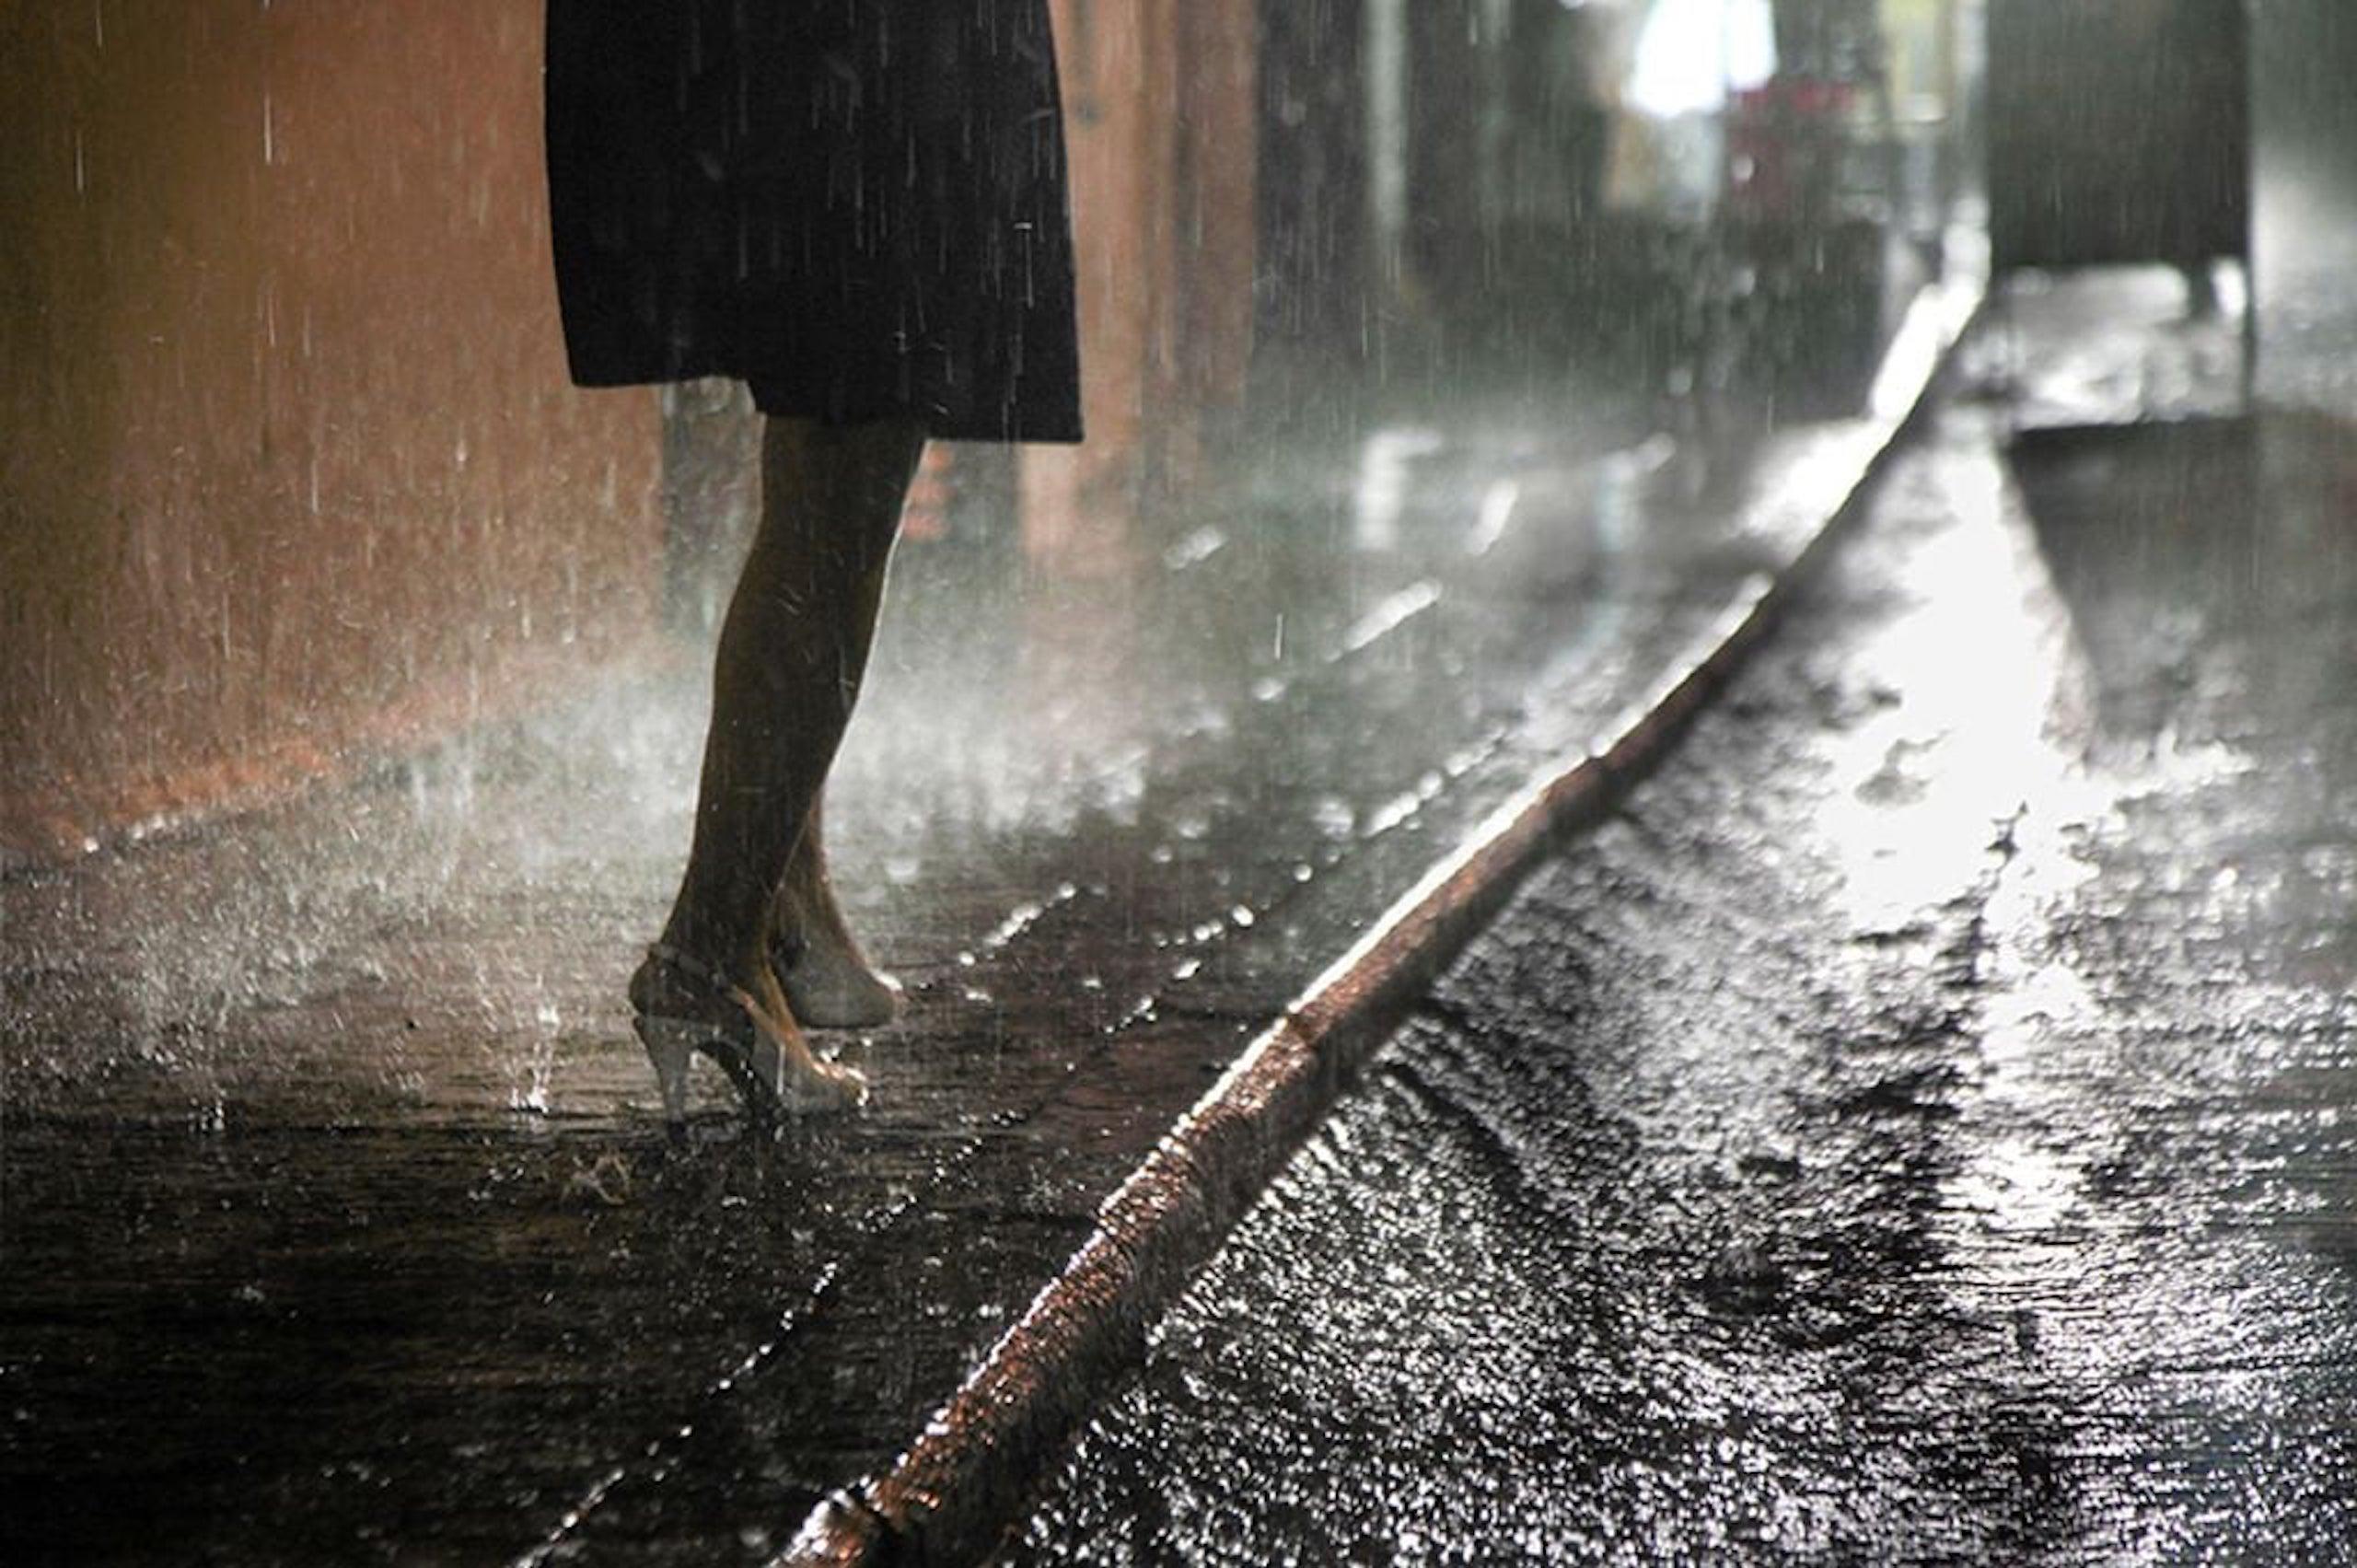 Rain Beauty ist eine limitierte Auflage der Fotografie des zeitgenössischen Künstlers Christophe Jacrot. Sie ist Teil der Reihe "Hongkong und Asien im Regen". 
 
Dieses Foto wird nur als ungerahmter Abzug verkauft. Sie ist in 2 Größen